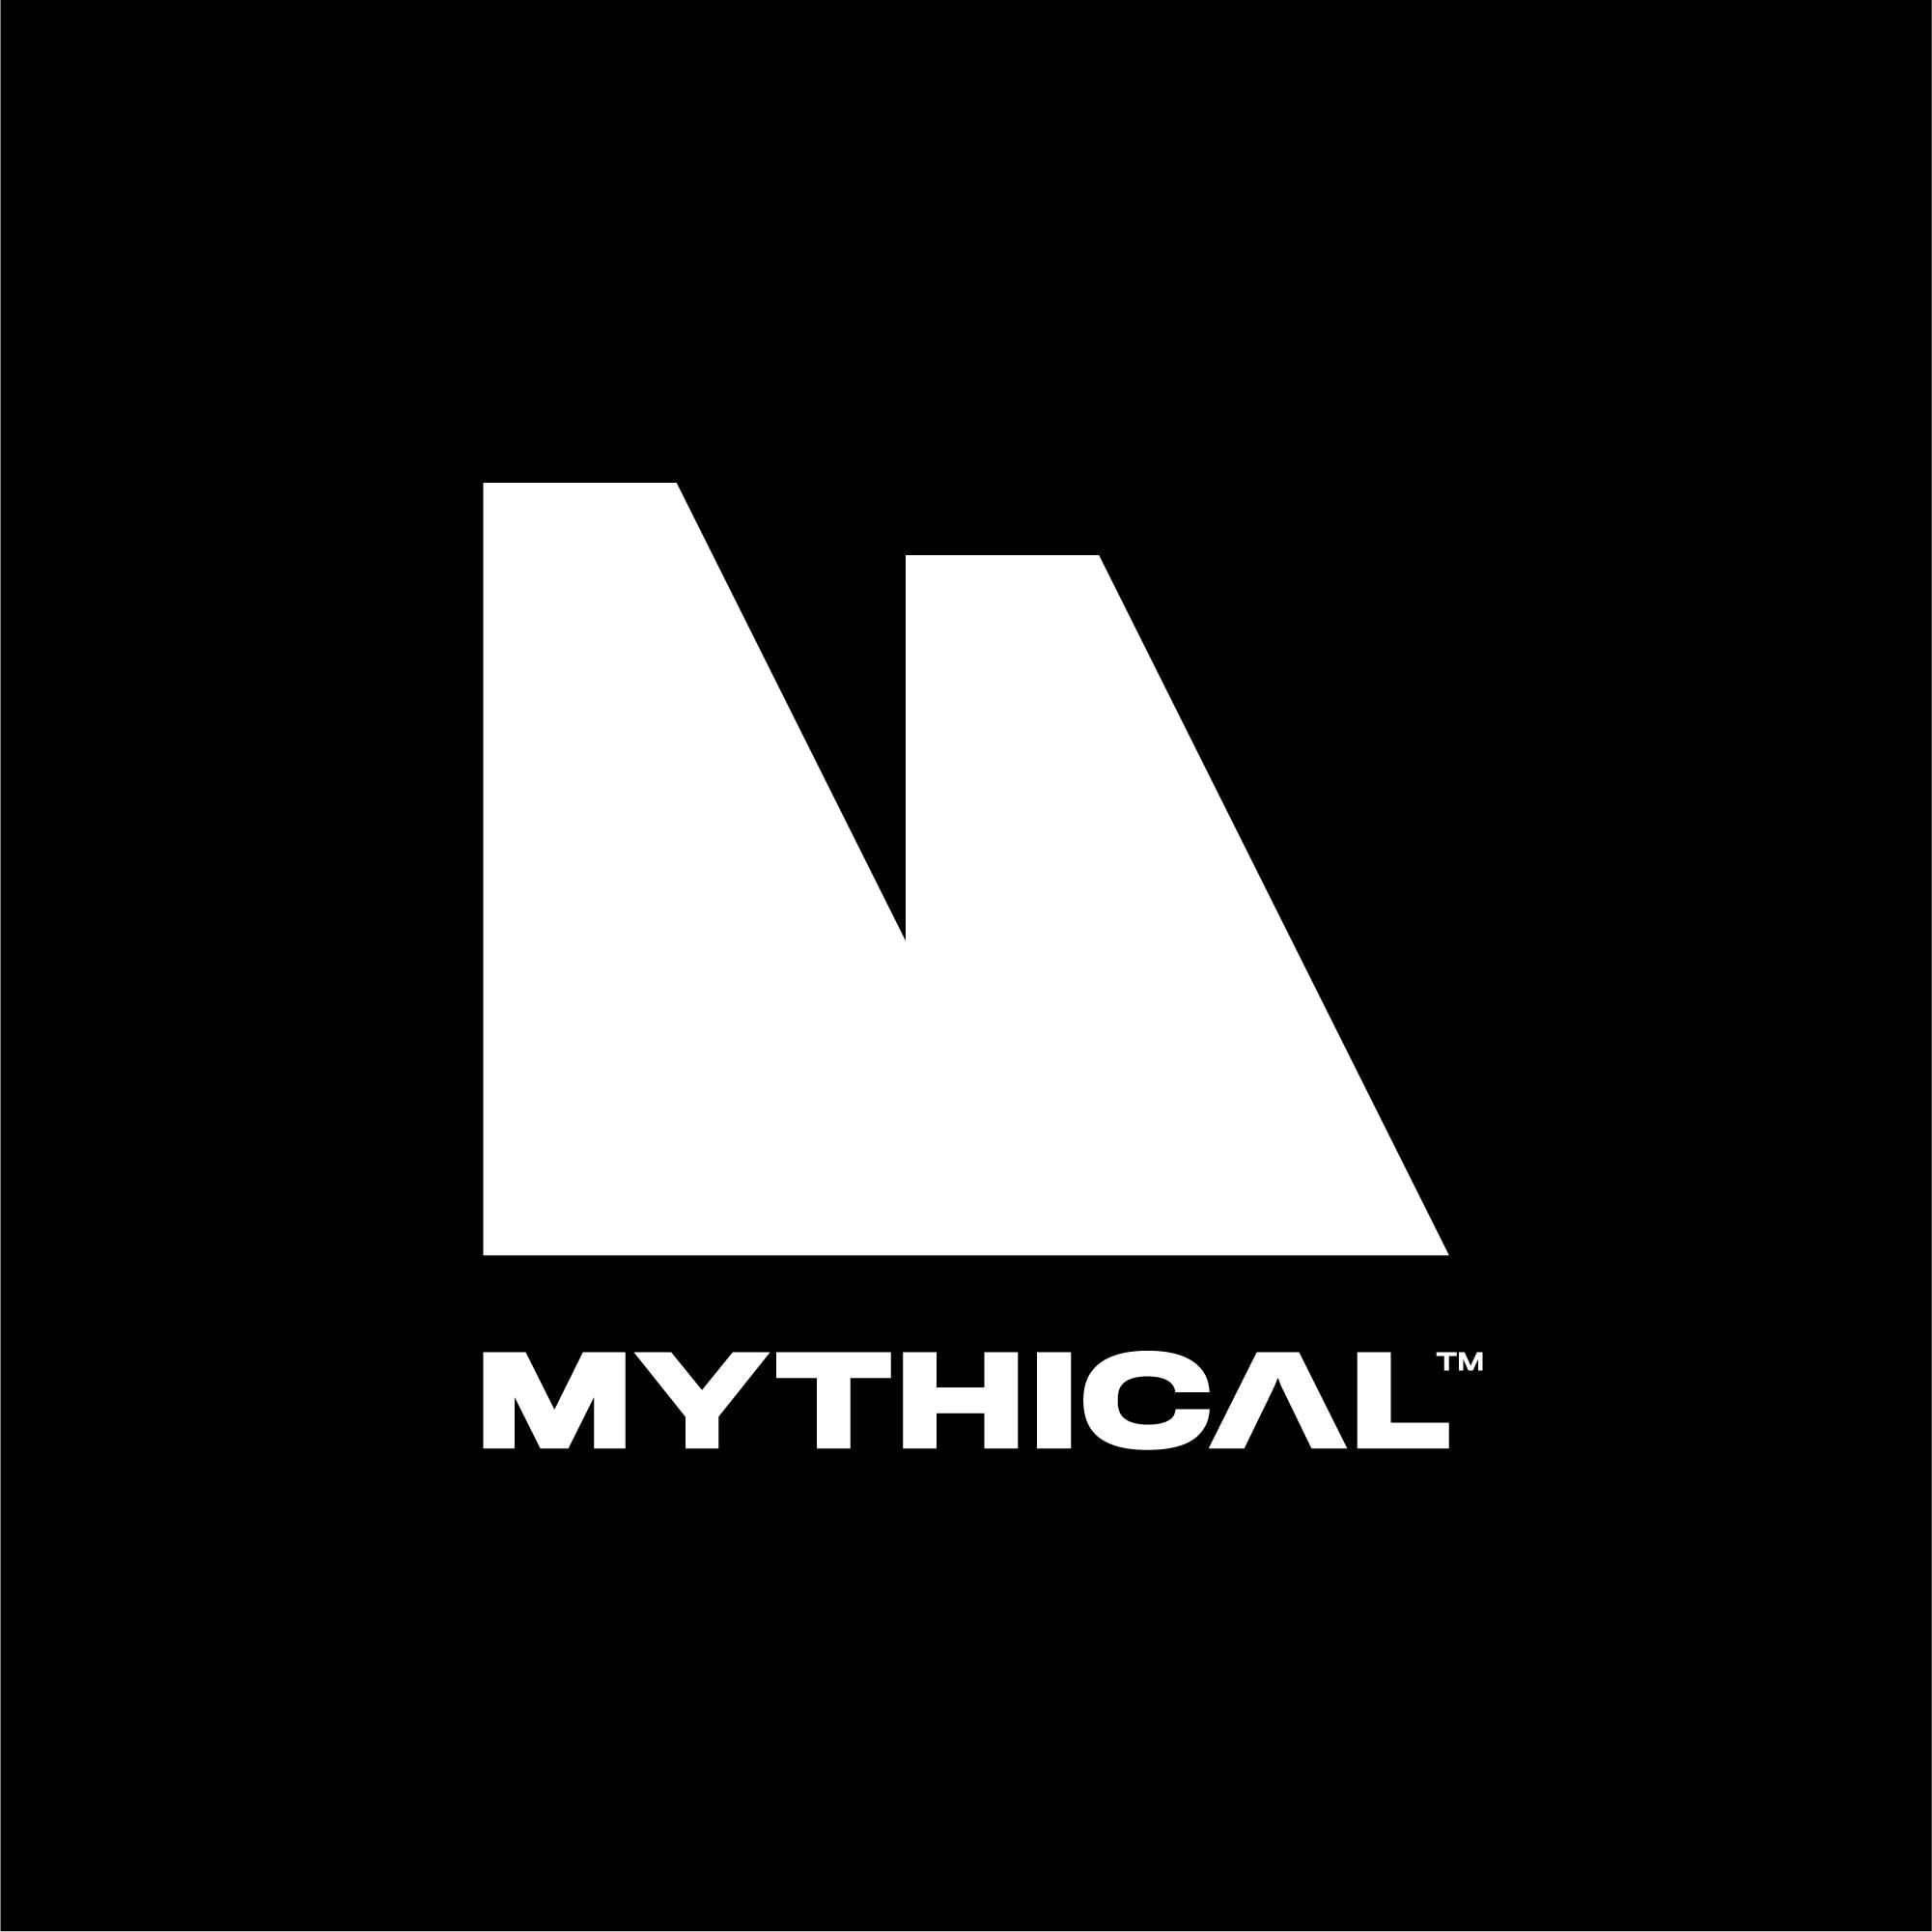 Mythical logo